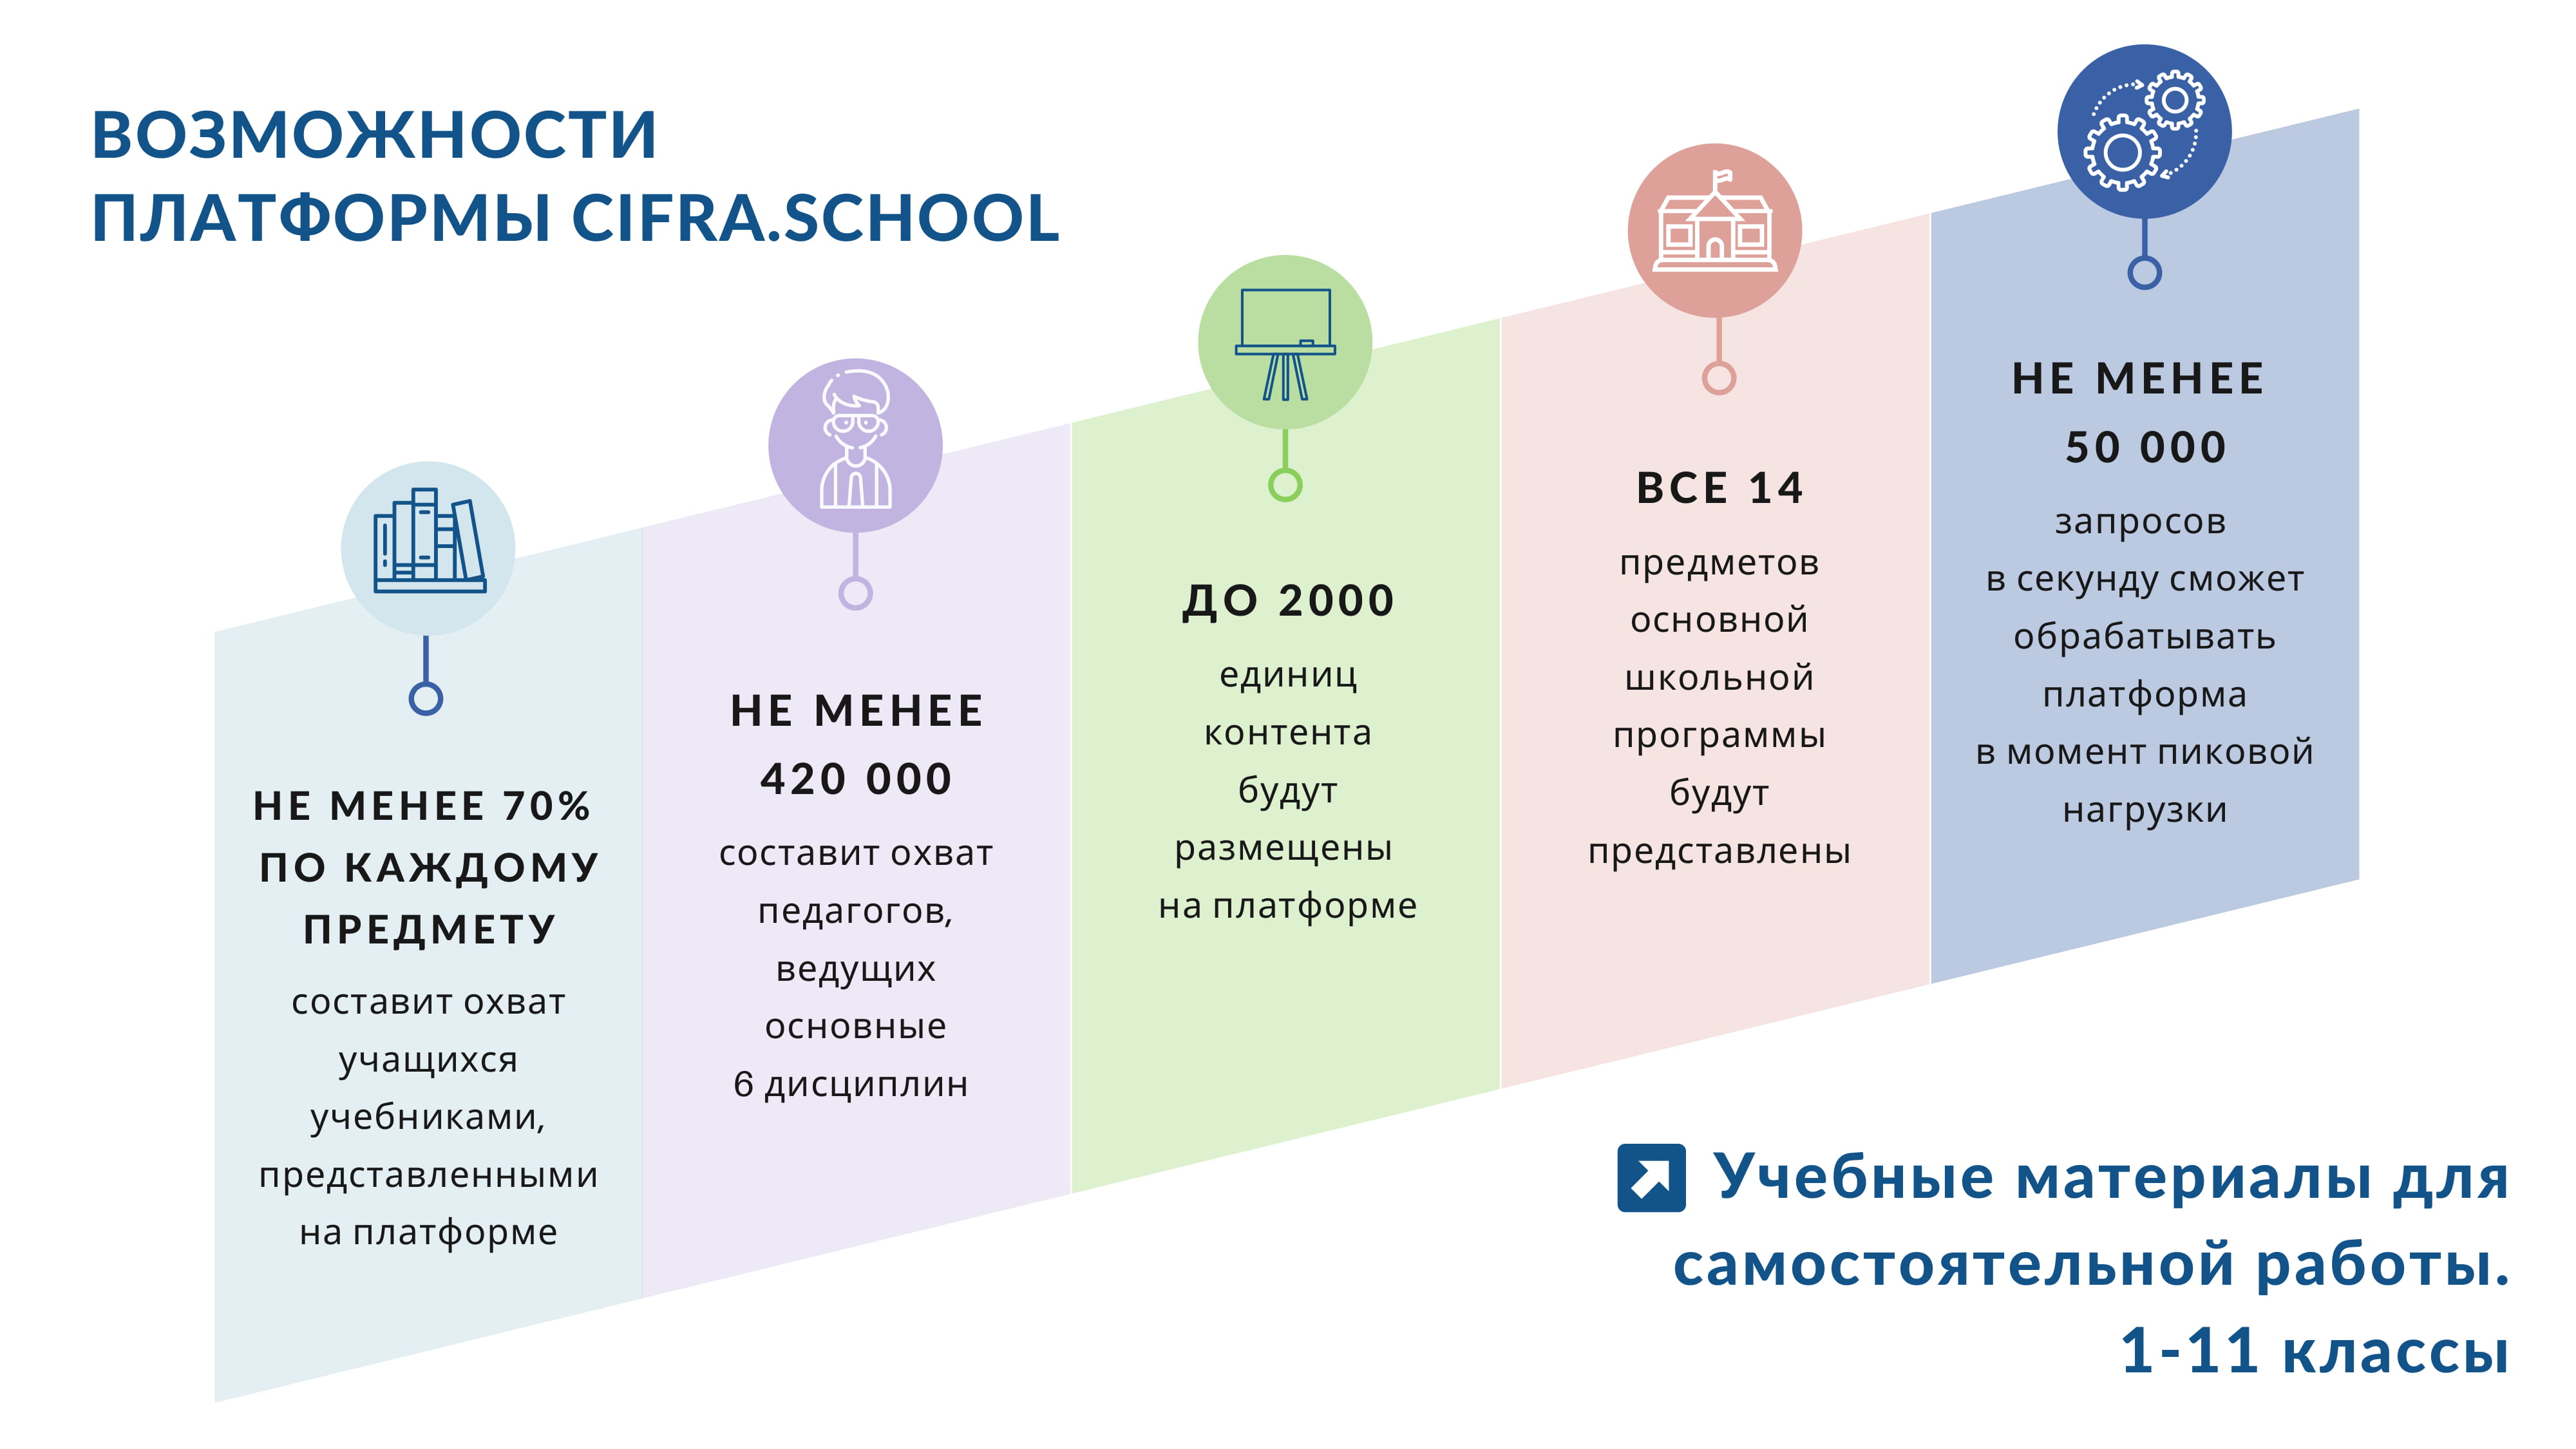 Https myschool edu ru фгис. Образовательная платформа «моя школа». Платформа ФГИС моя школа.